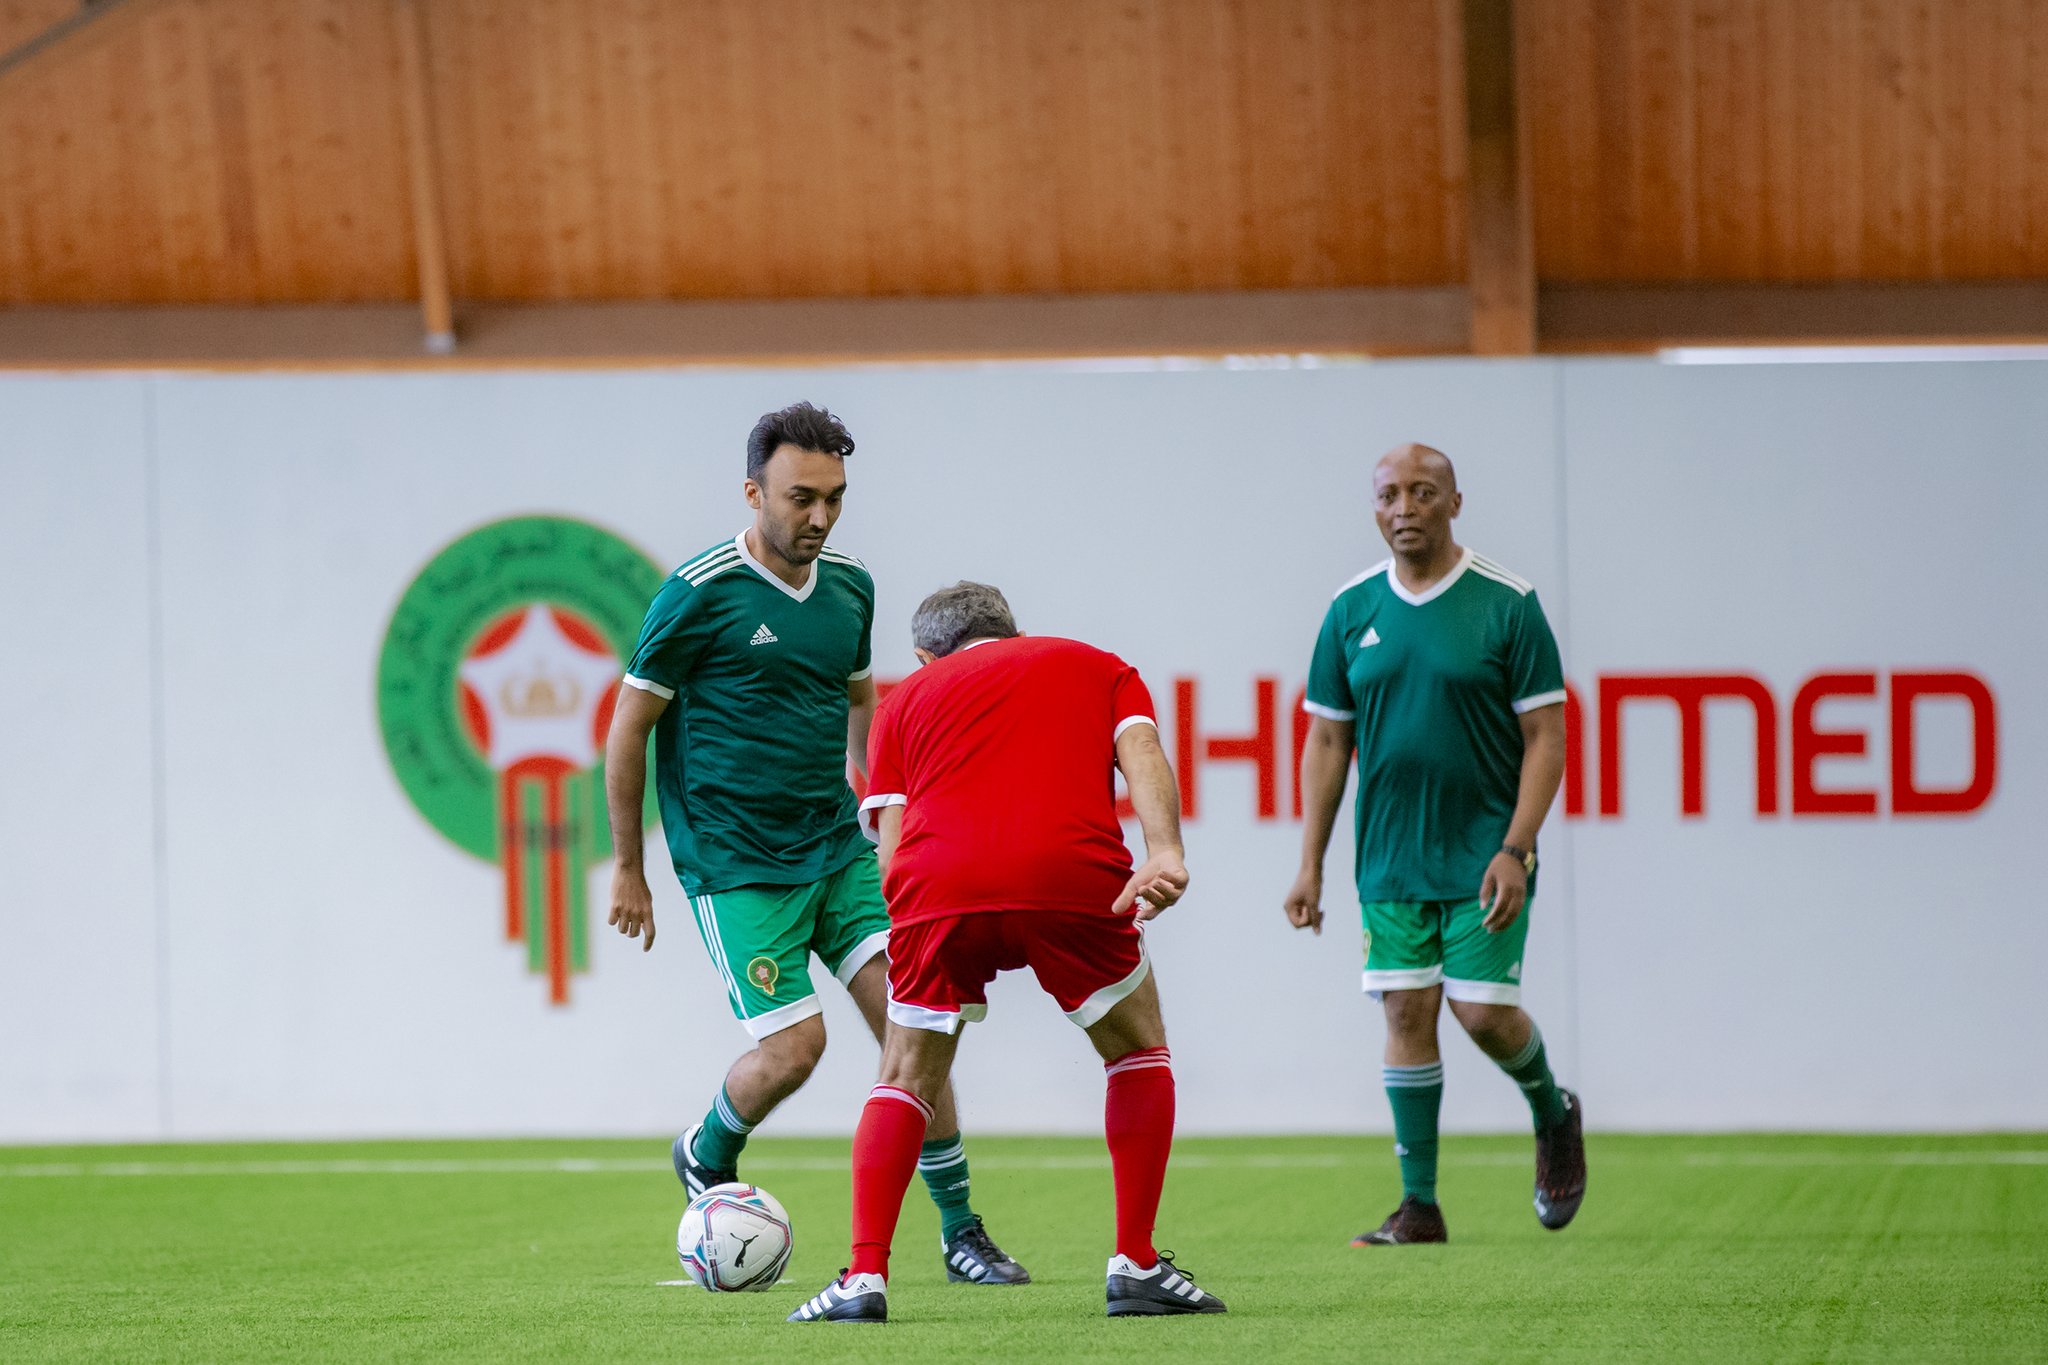 شاهد مهارات ومراوغات الأمير عبدالعزيز بن تركي في مباراة استعراضية بالمغرب !